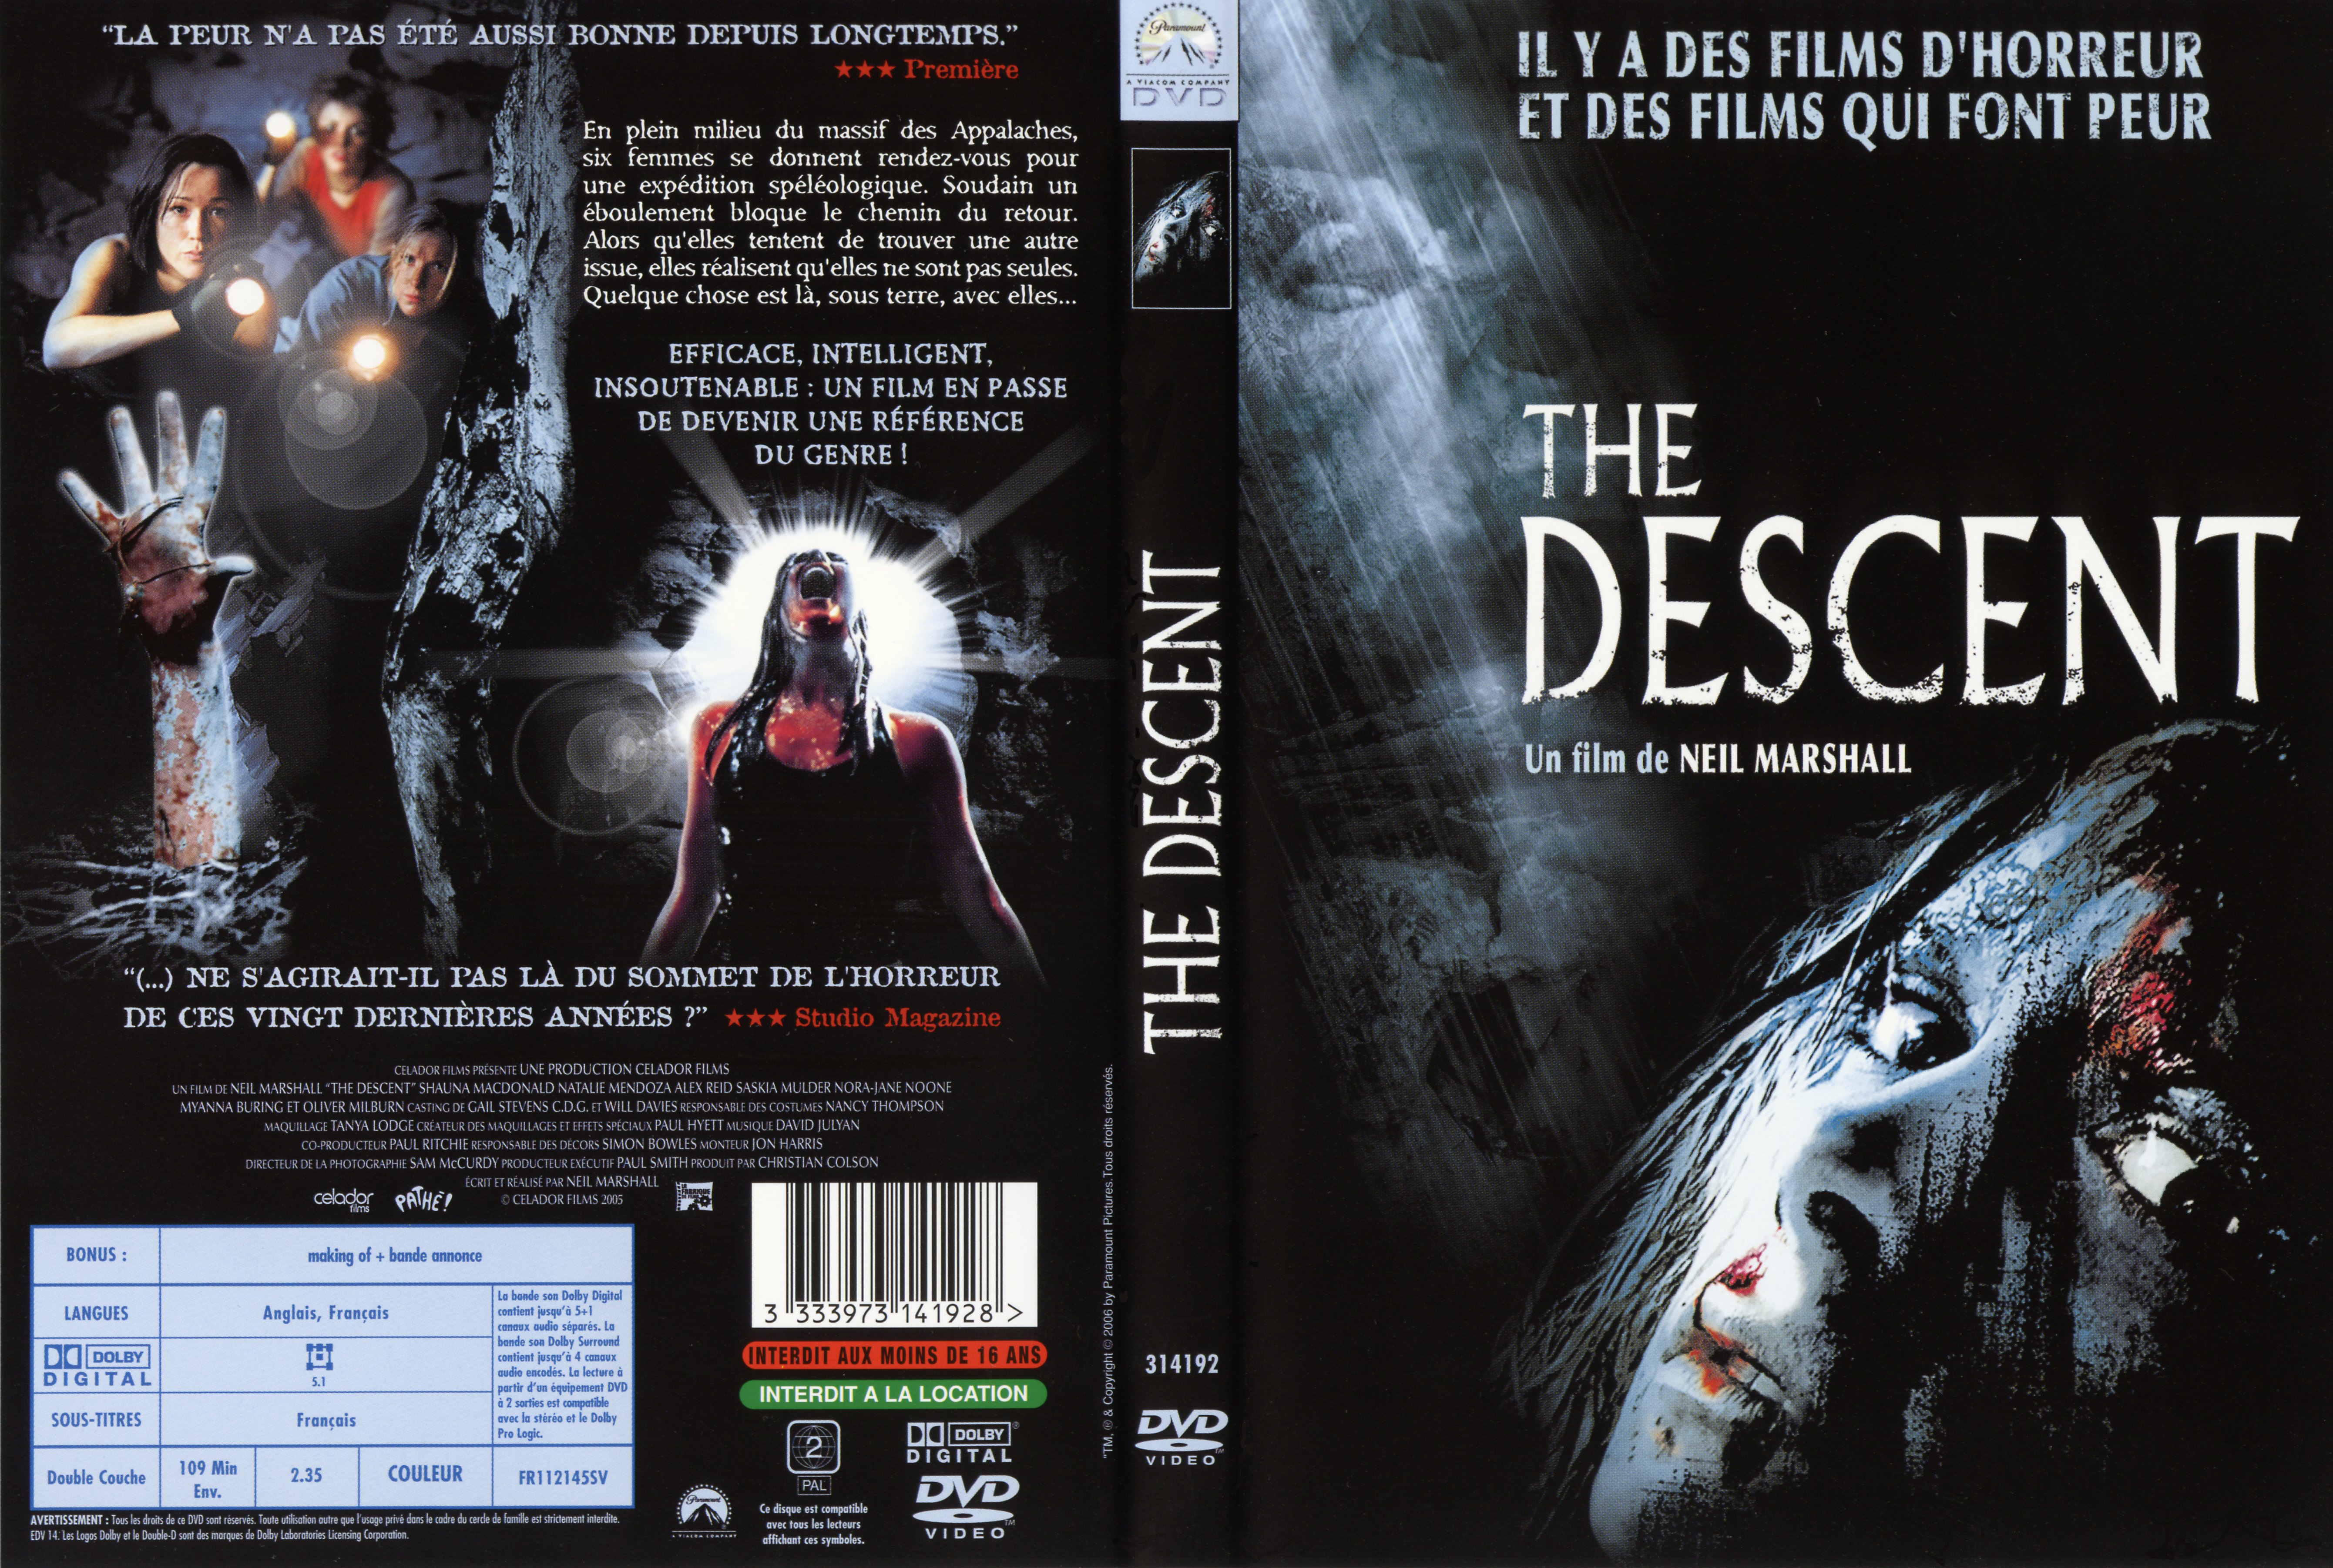 Jaquette DVD The descent